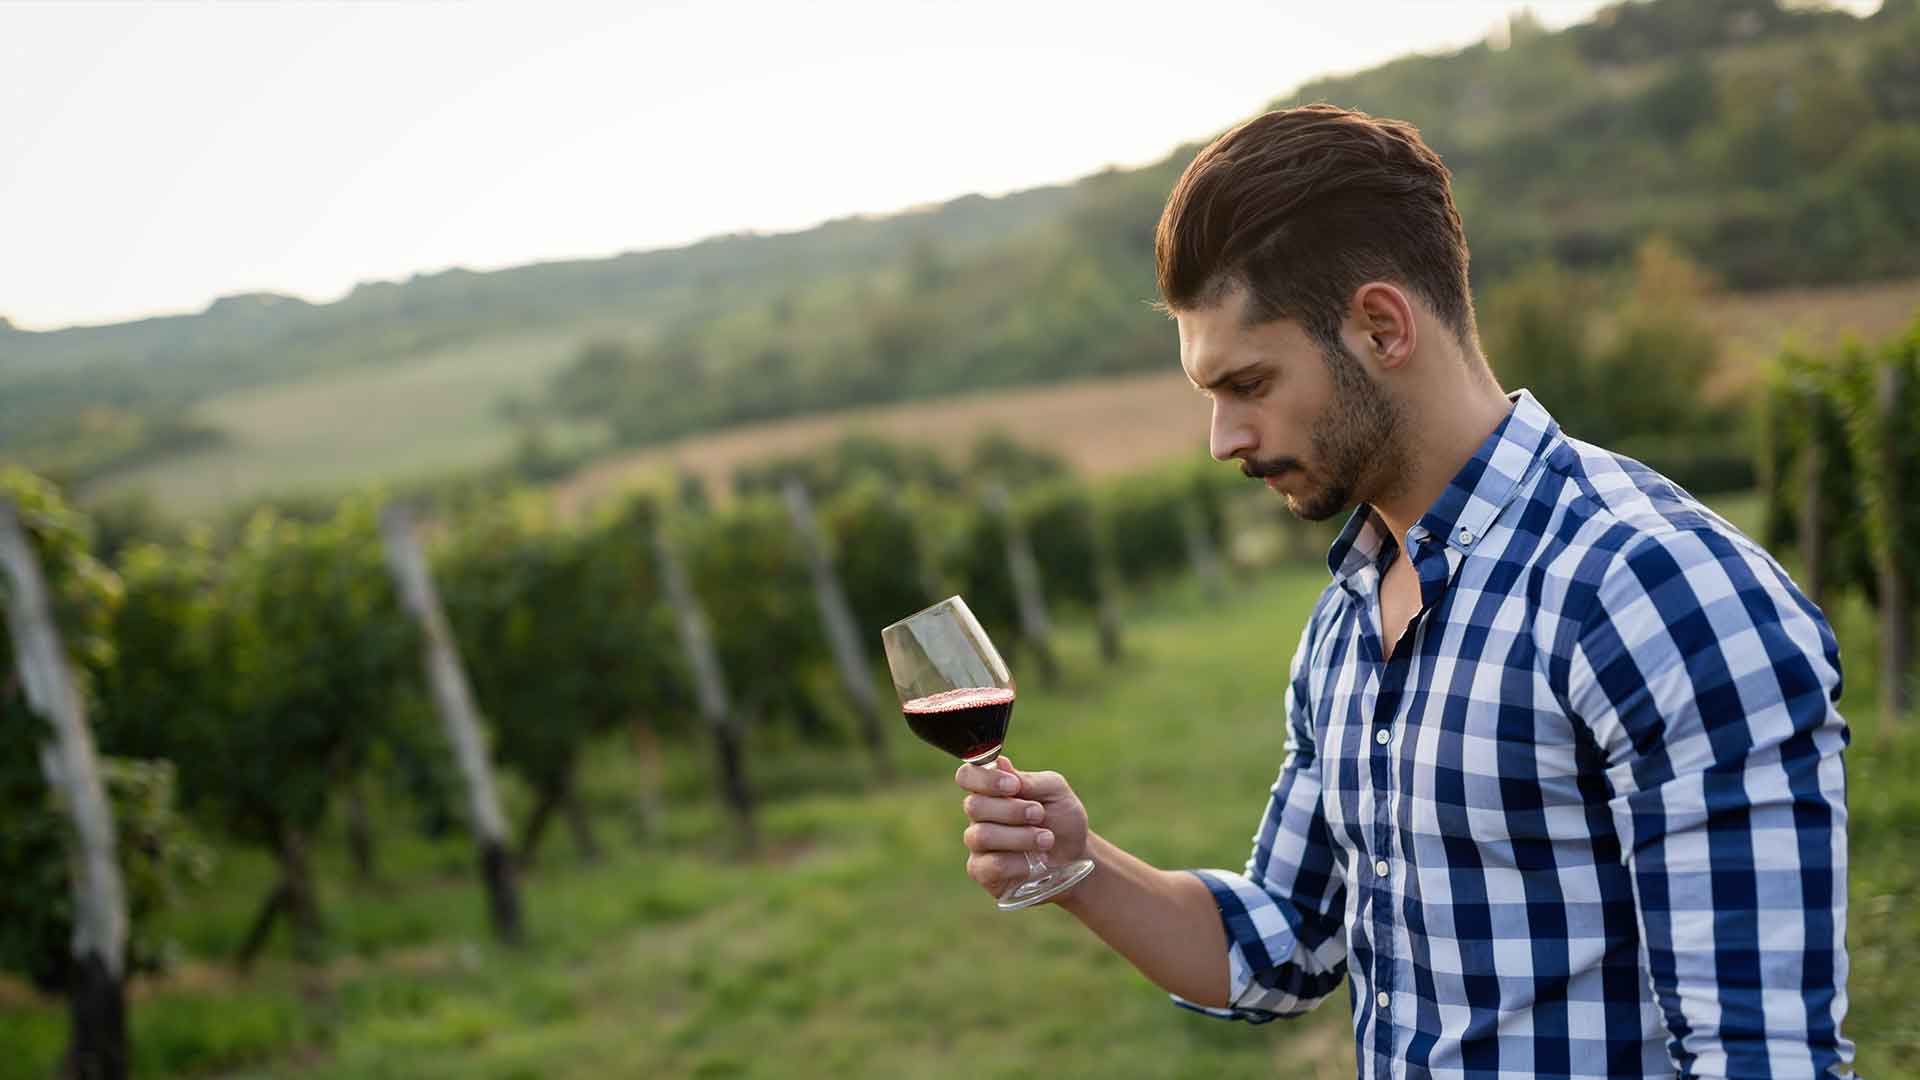 winegrower-tasting-wine-in-vineyard